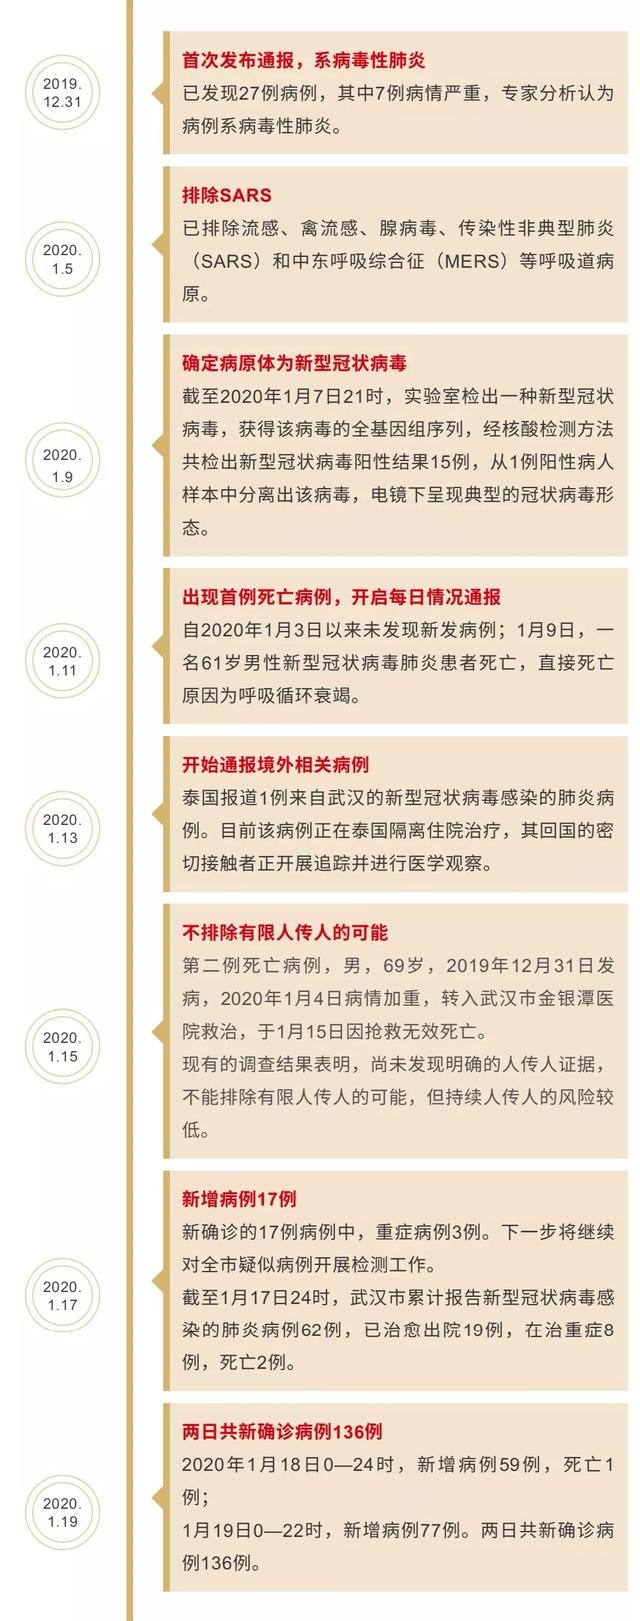 武漢新增新型肺炎136例，北京、廣東確診新型冠狀病毒感染肺炎病例